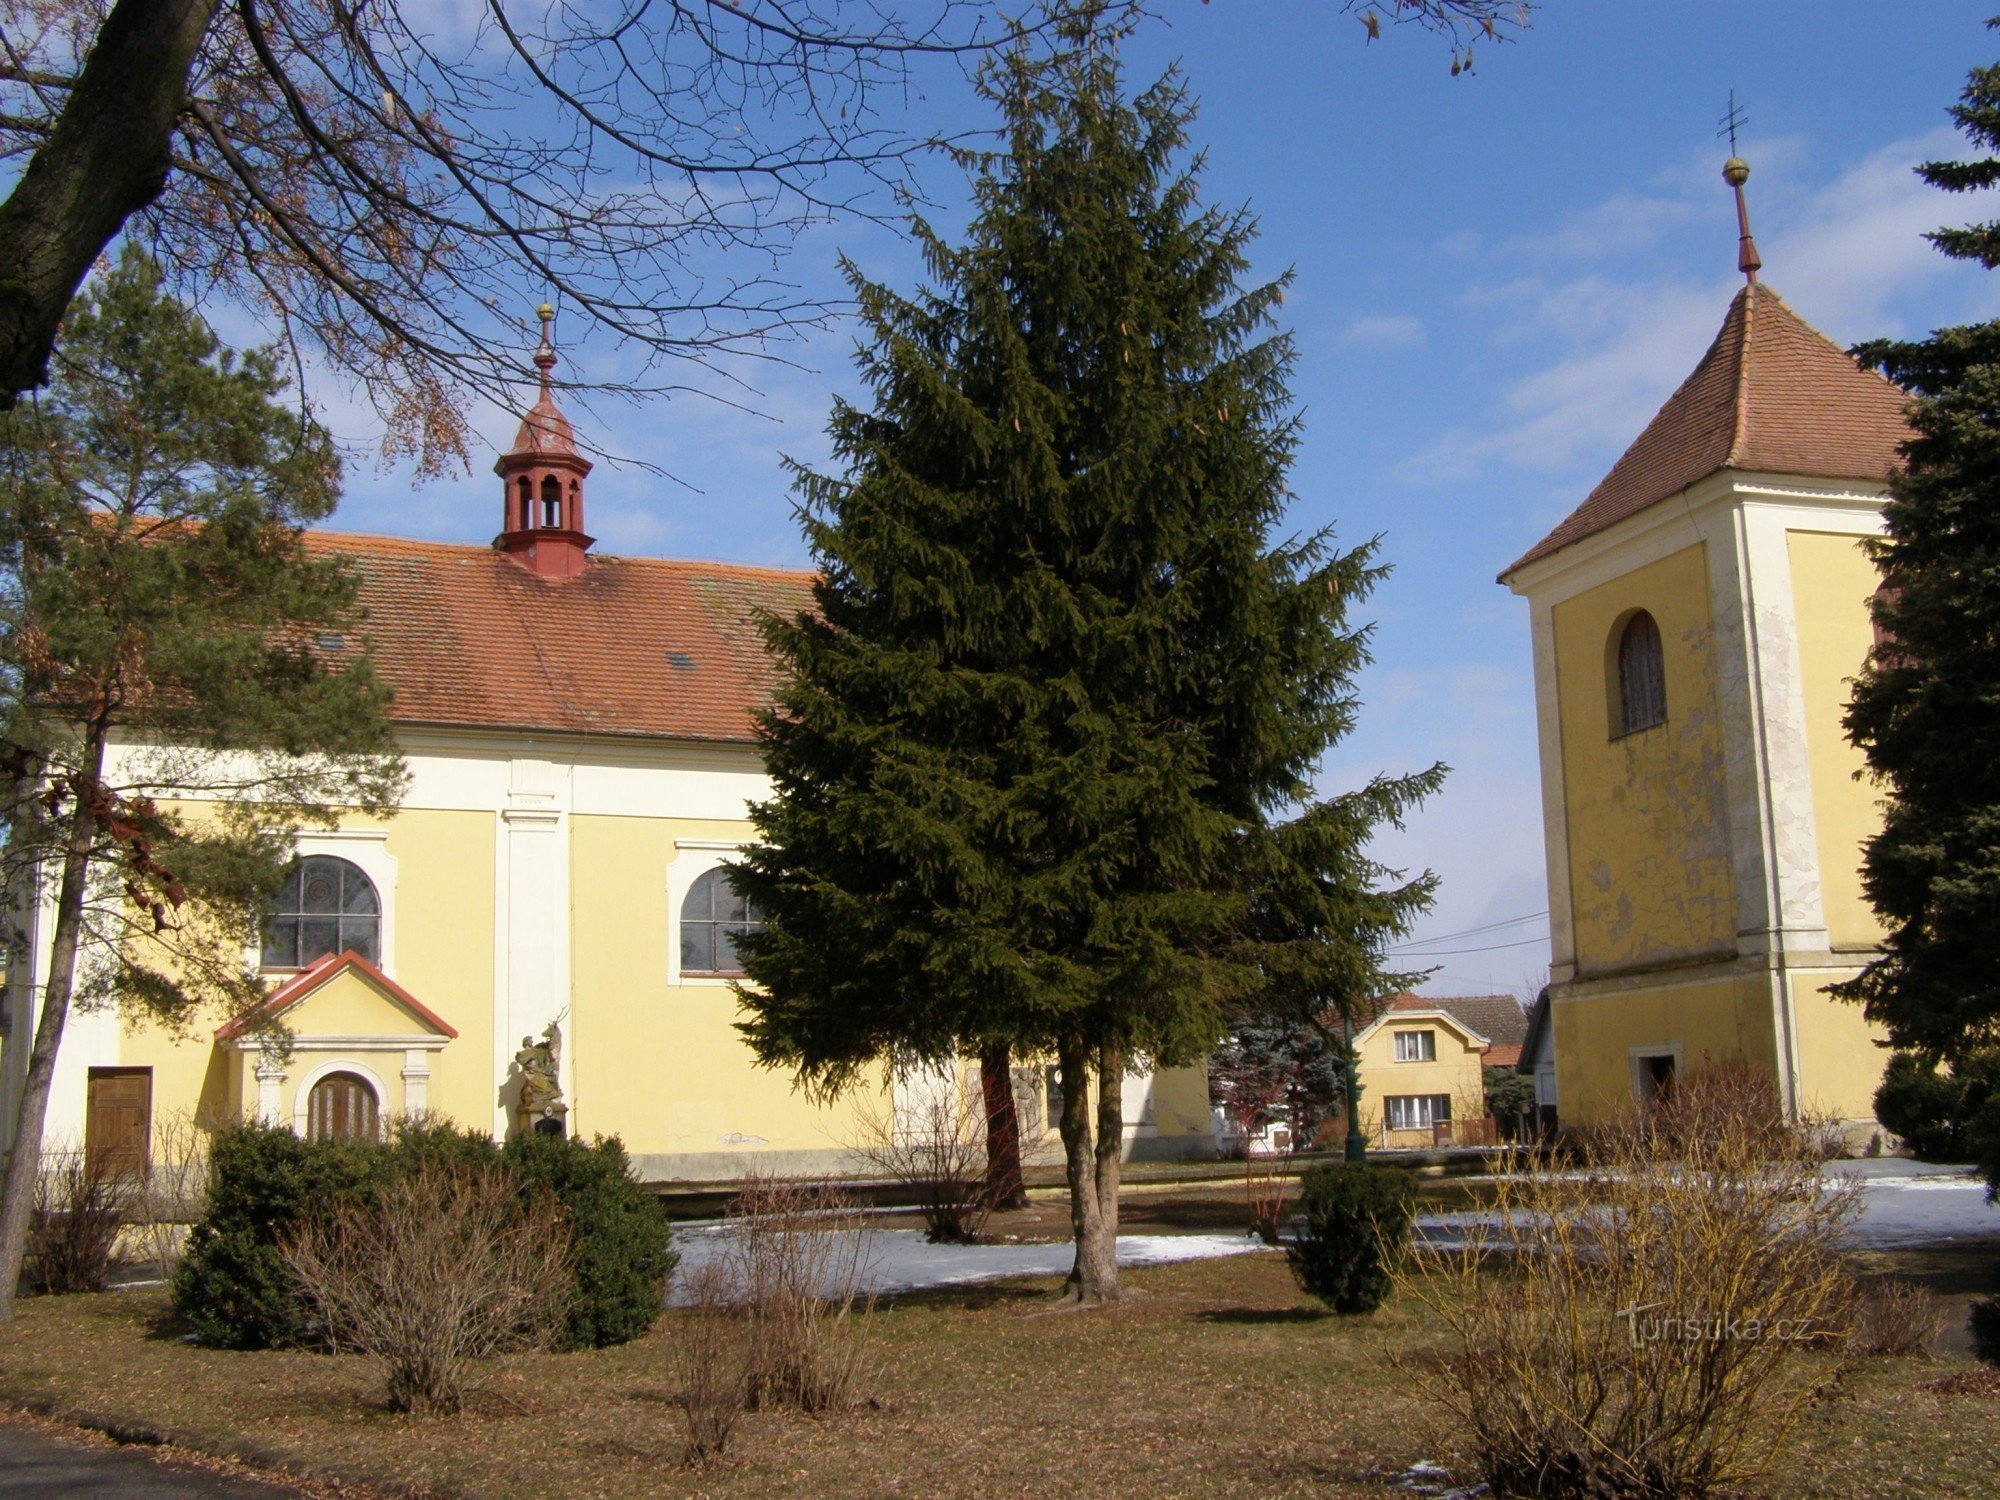 Lovčice - Chiesa di S. Bartolomeo con il campanile